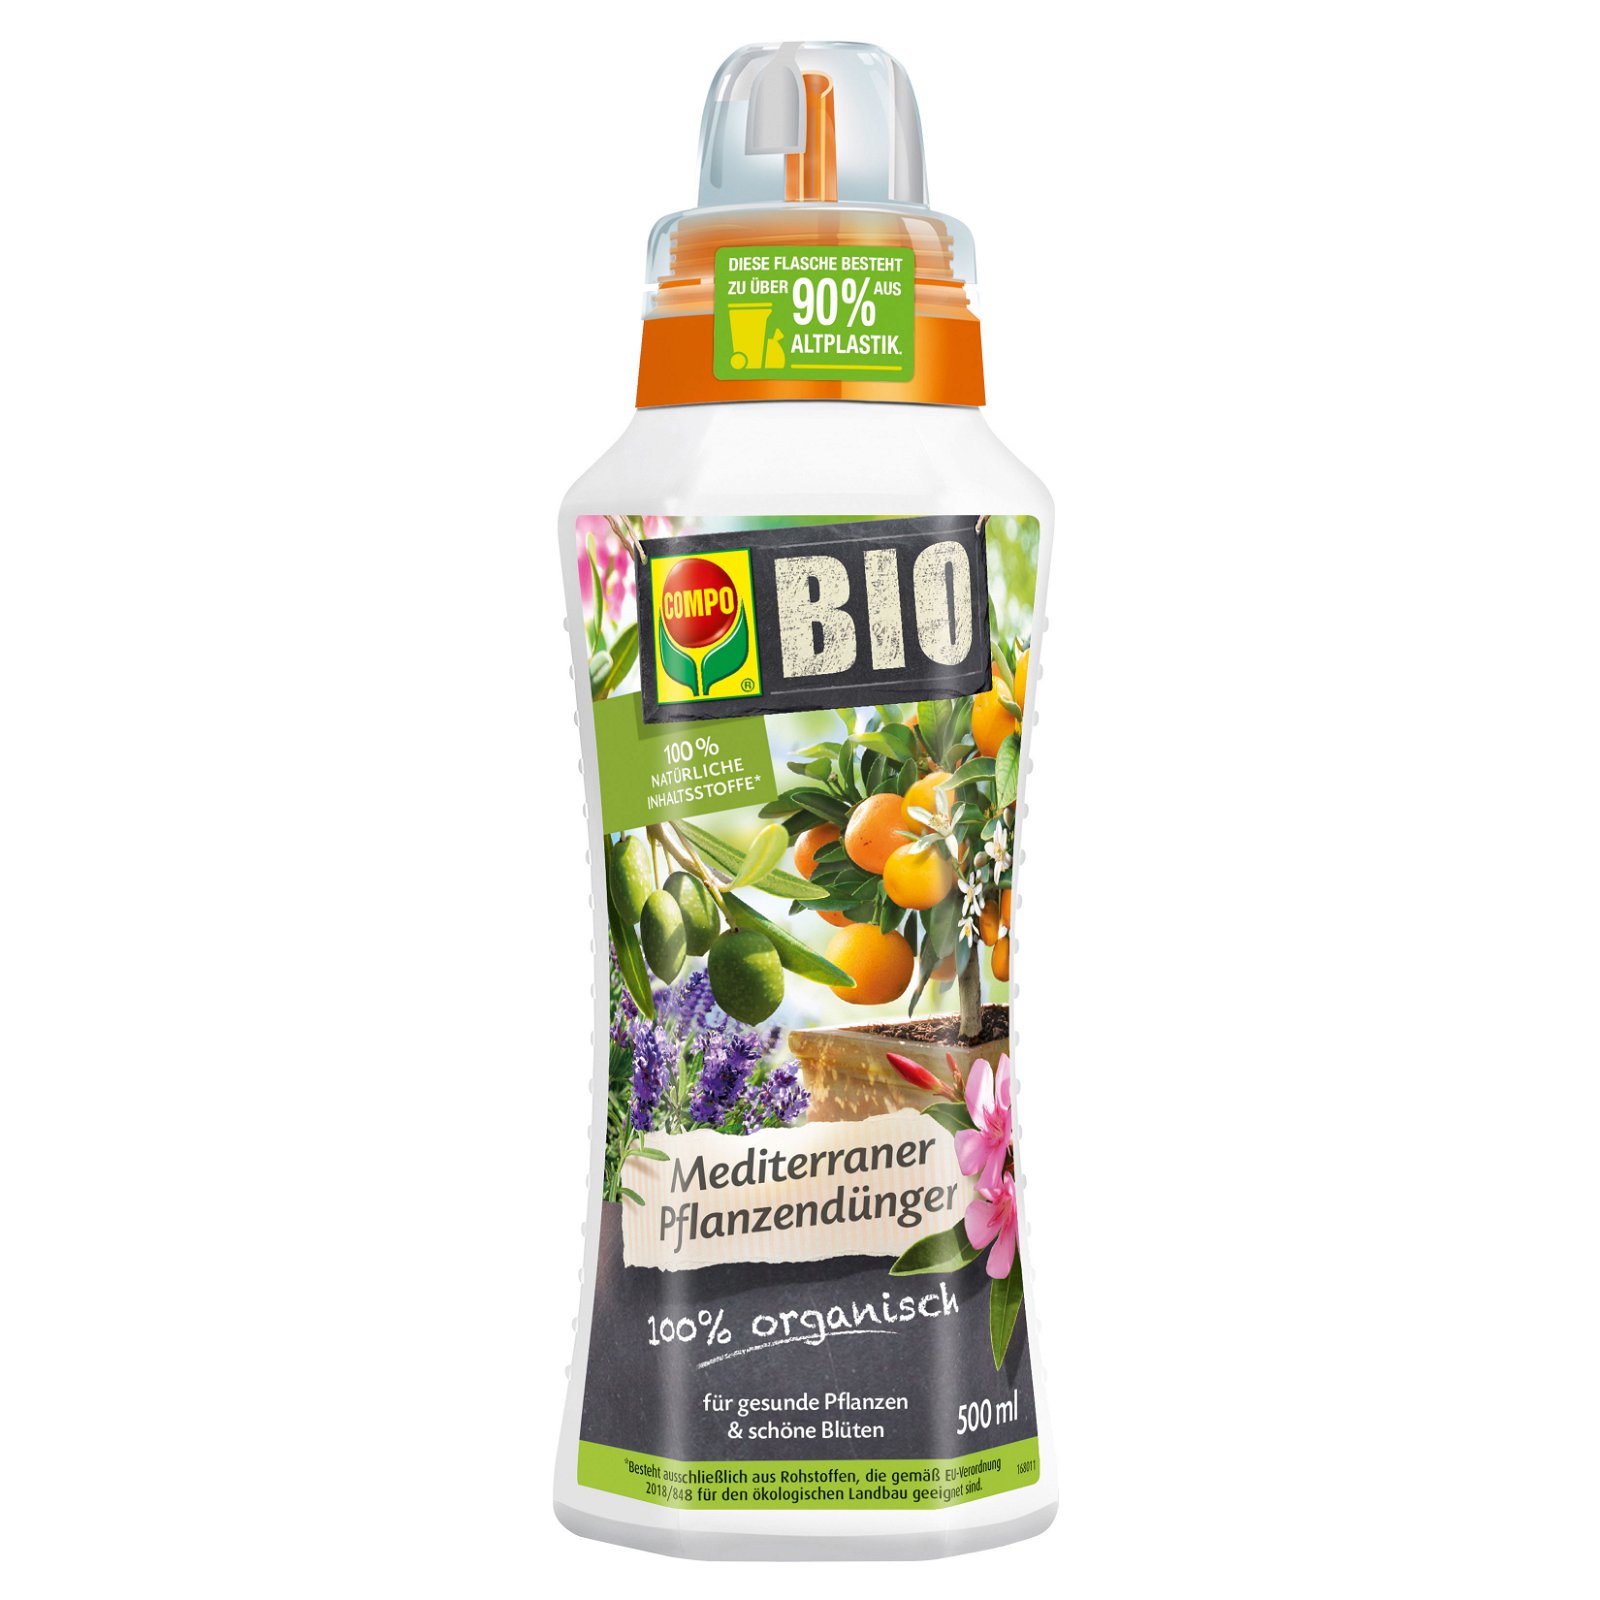 Compo Bio Mediterraner Pflanzendünger, 500 ml